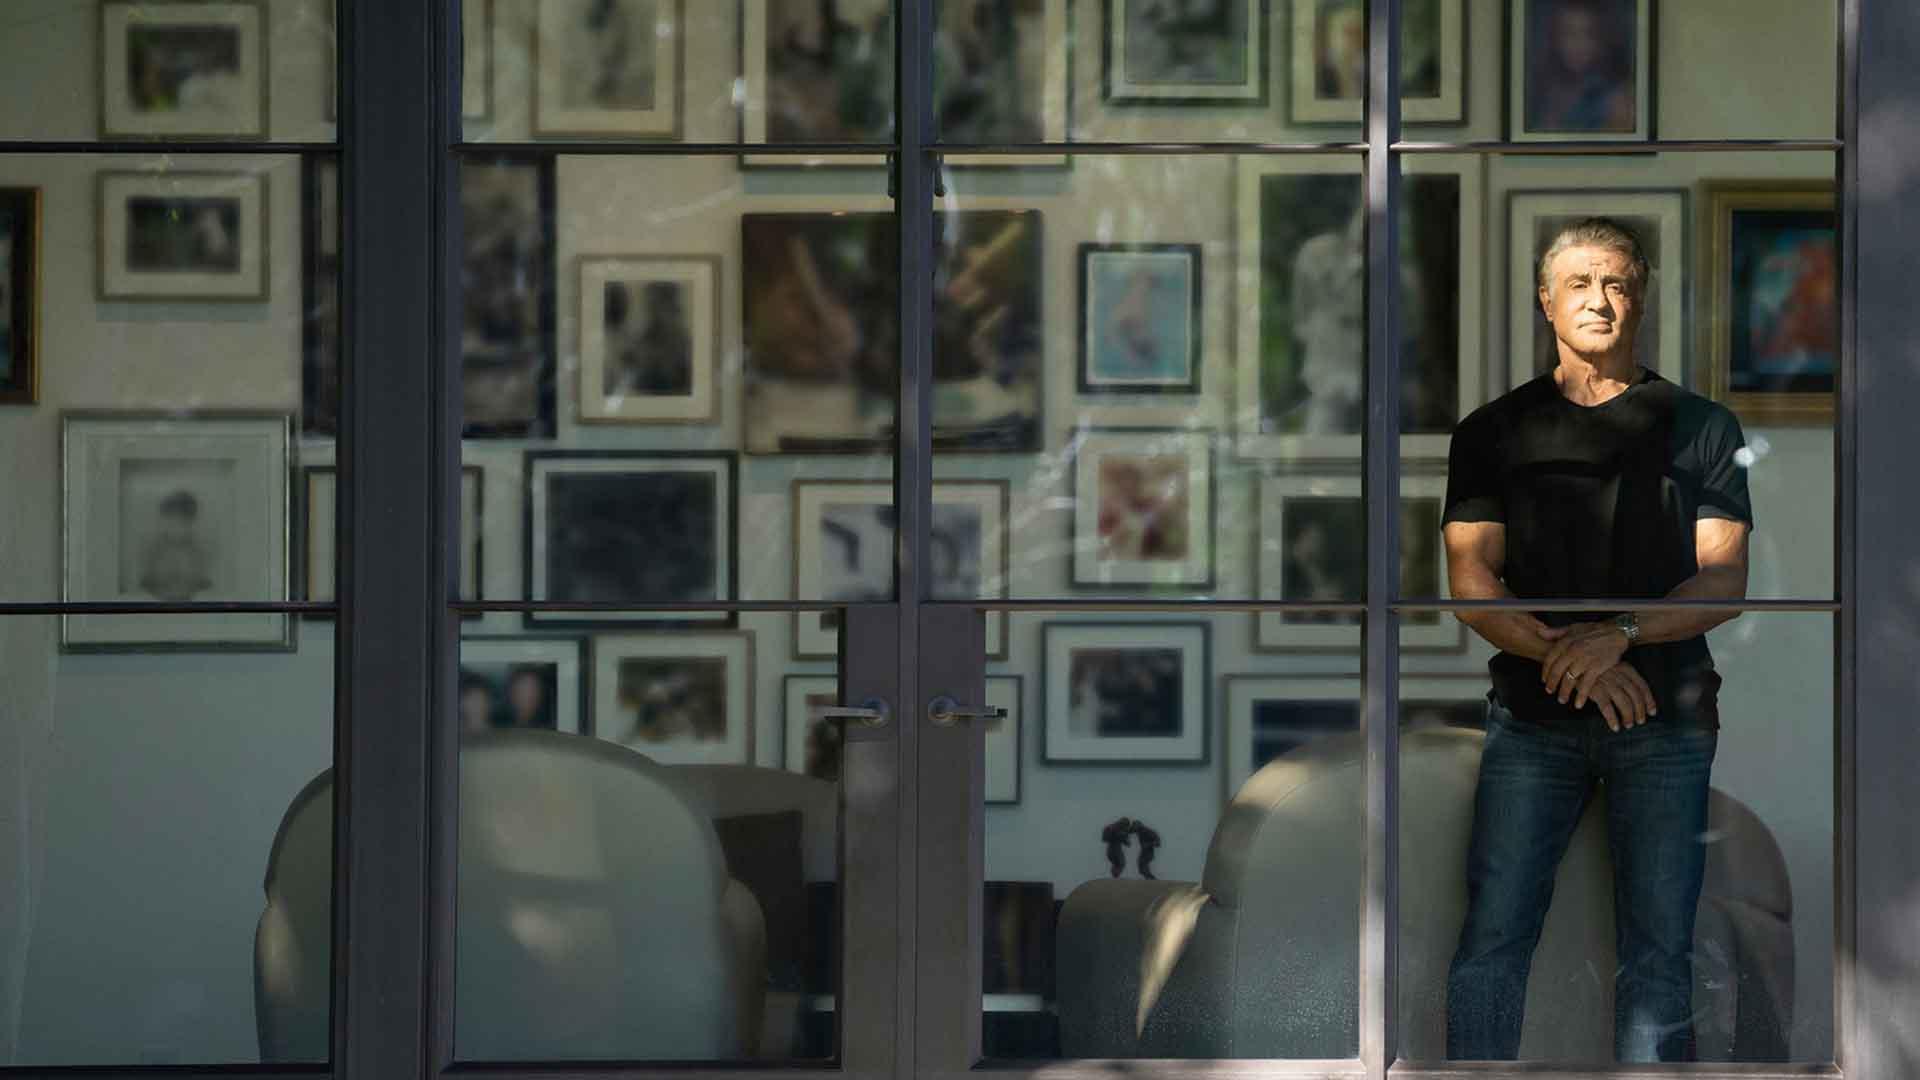 سیلوستر استالونه در حال نگاه کردن به بیرون از خانه در مستند Sly